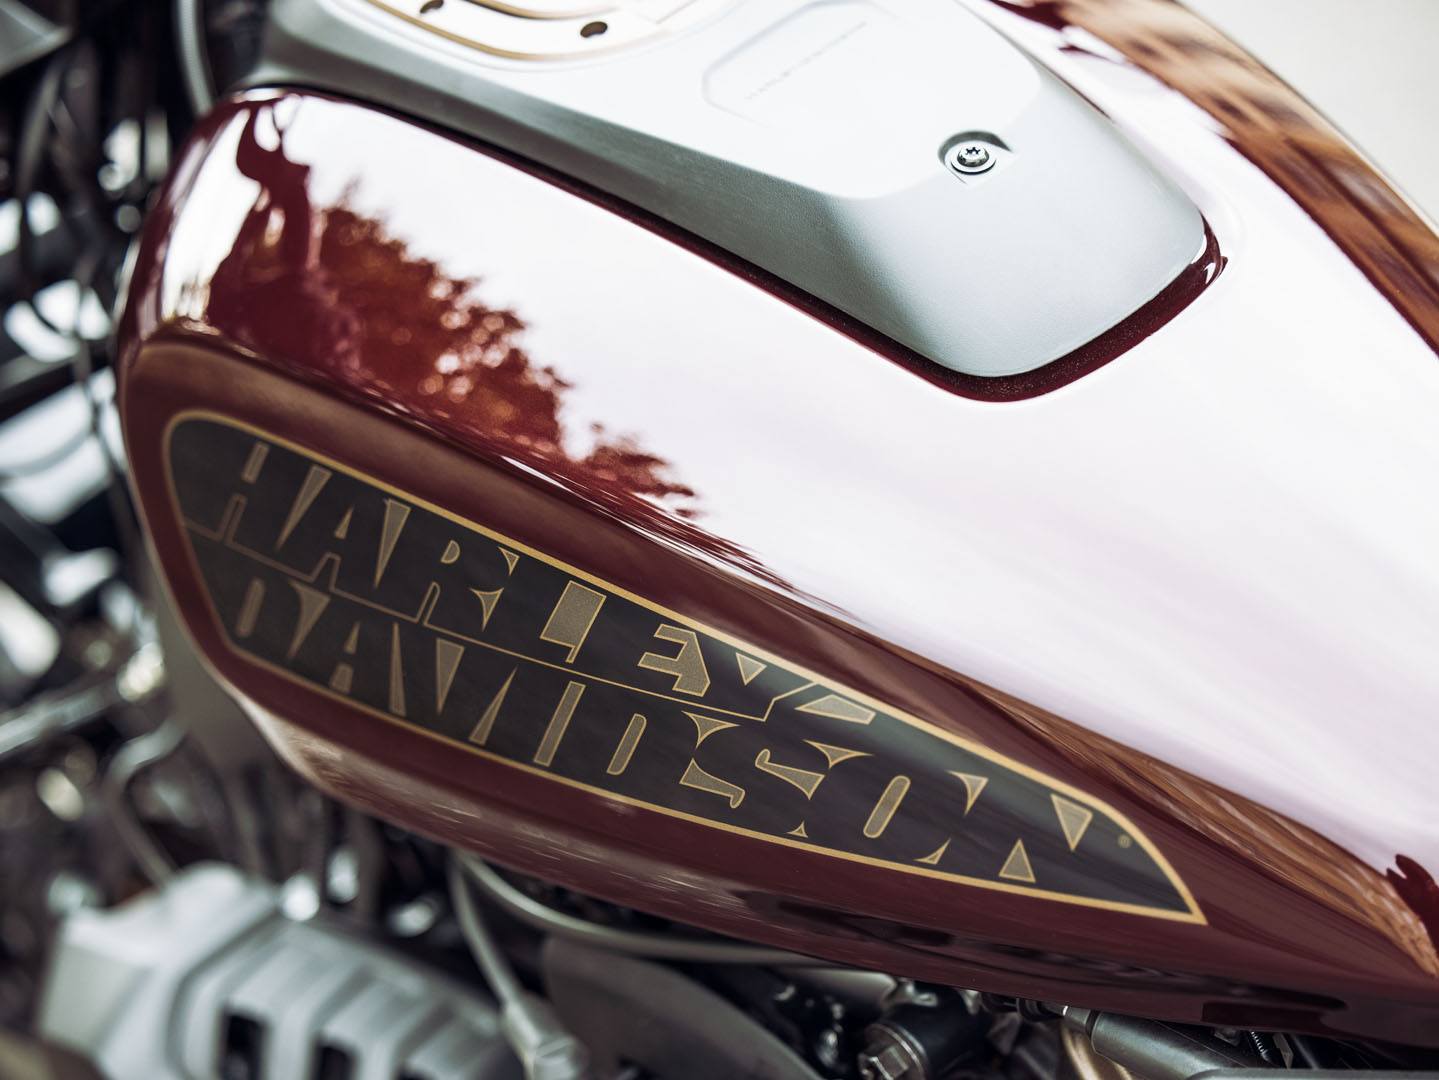 2021 Harley-Davidson Sportster® S in San Francisco, California